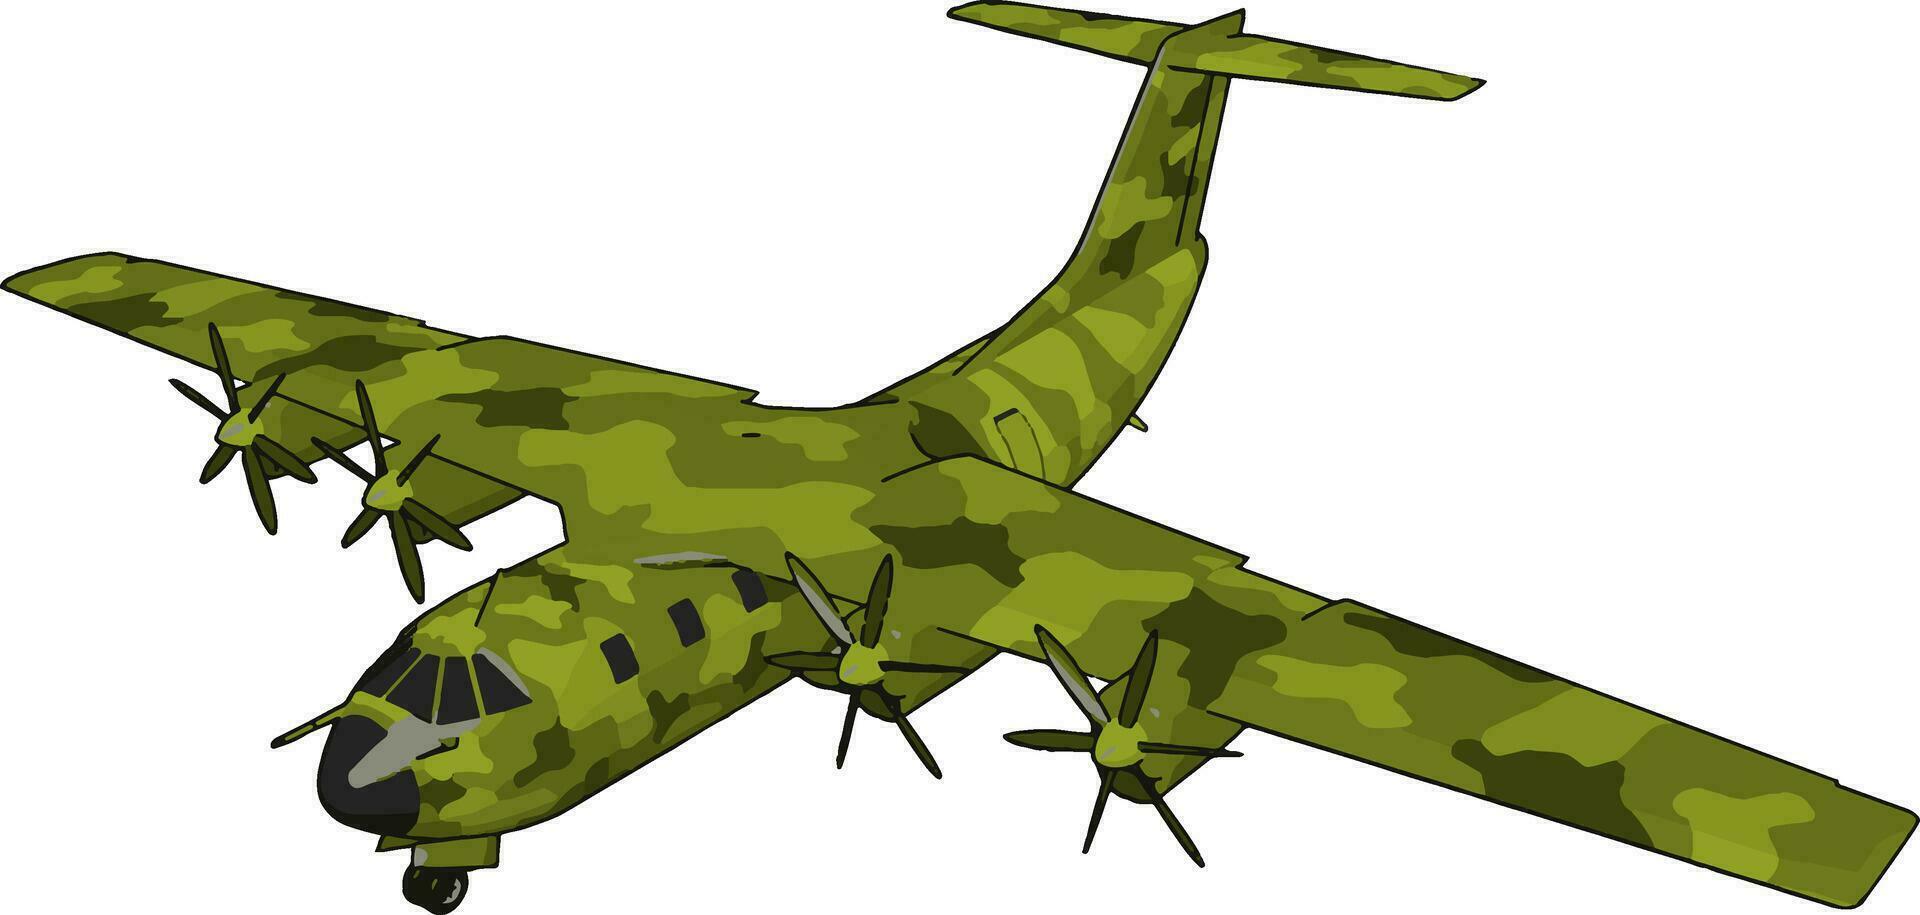 Gran viejo bombardero verde, ilustración, vector sobre fondo blanco.